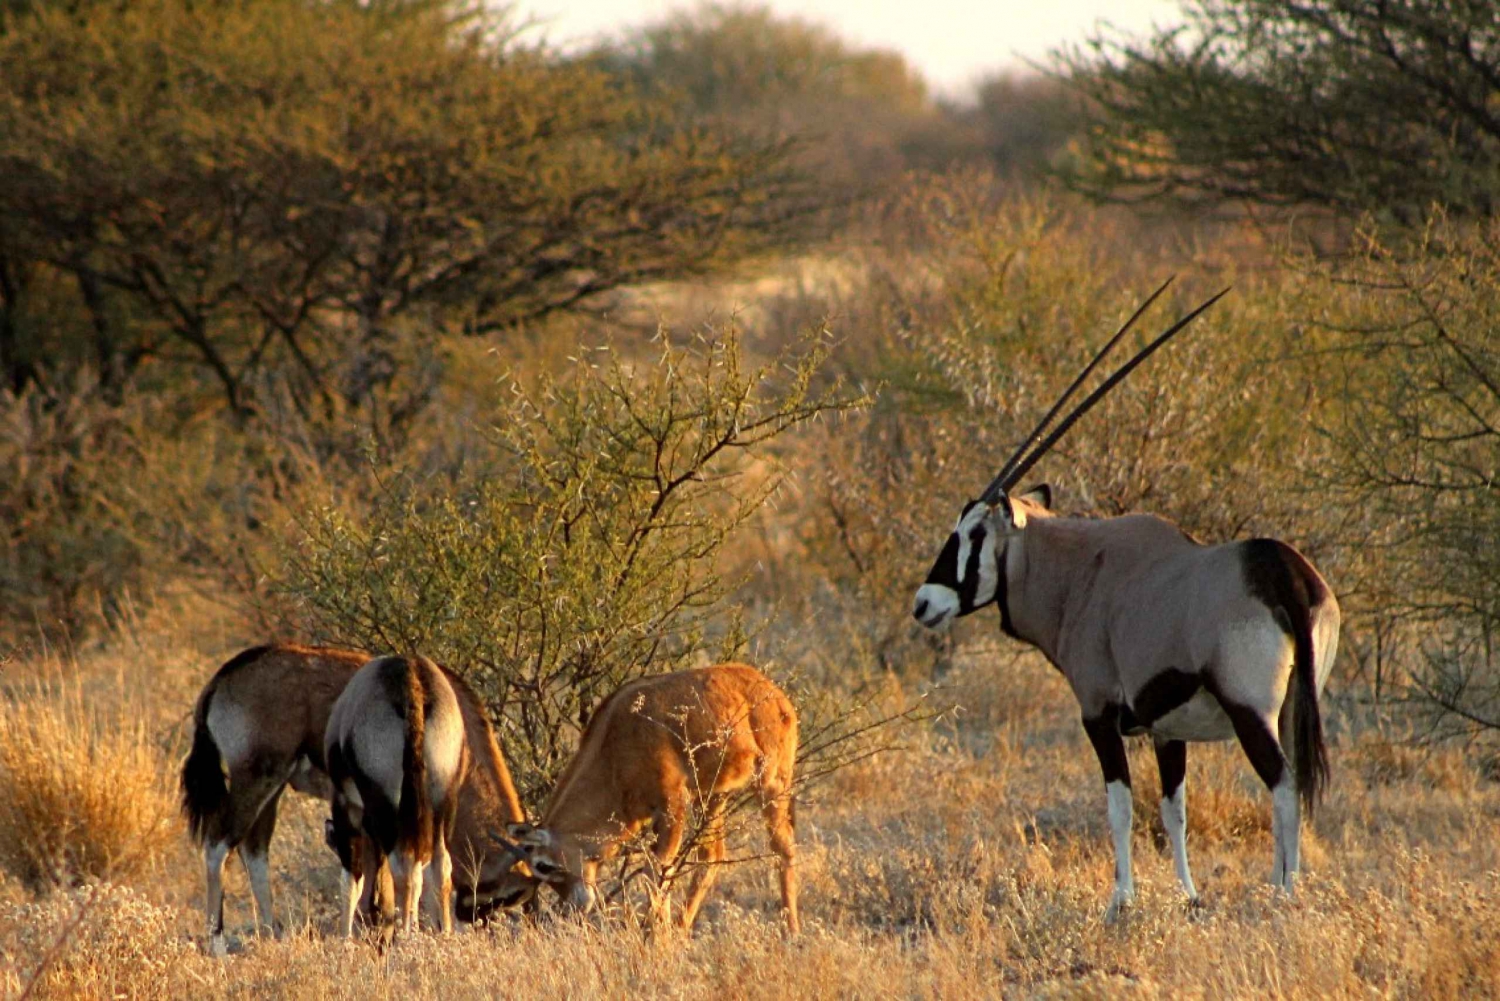 Photograph-the-Central-Kalahari-Game-Reserve